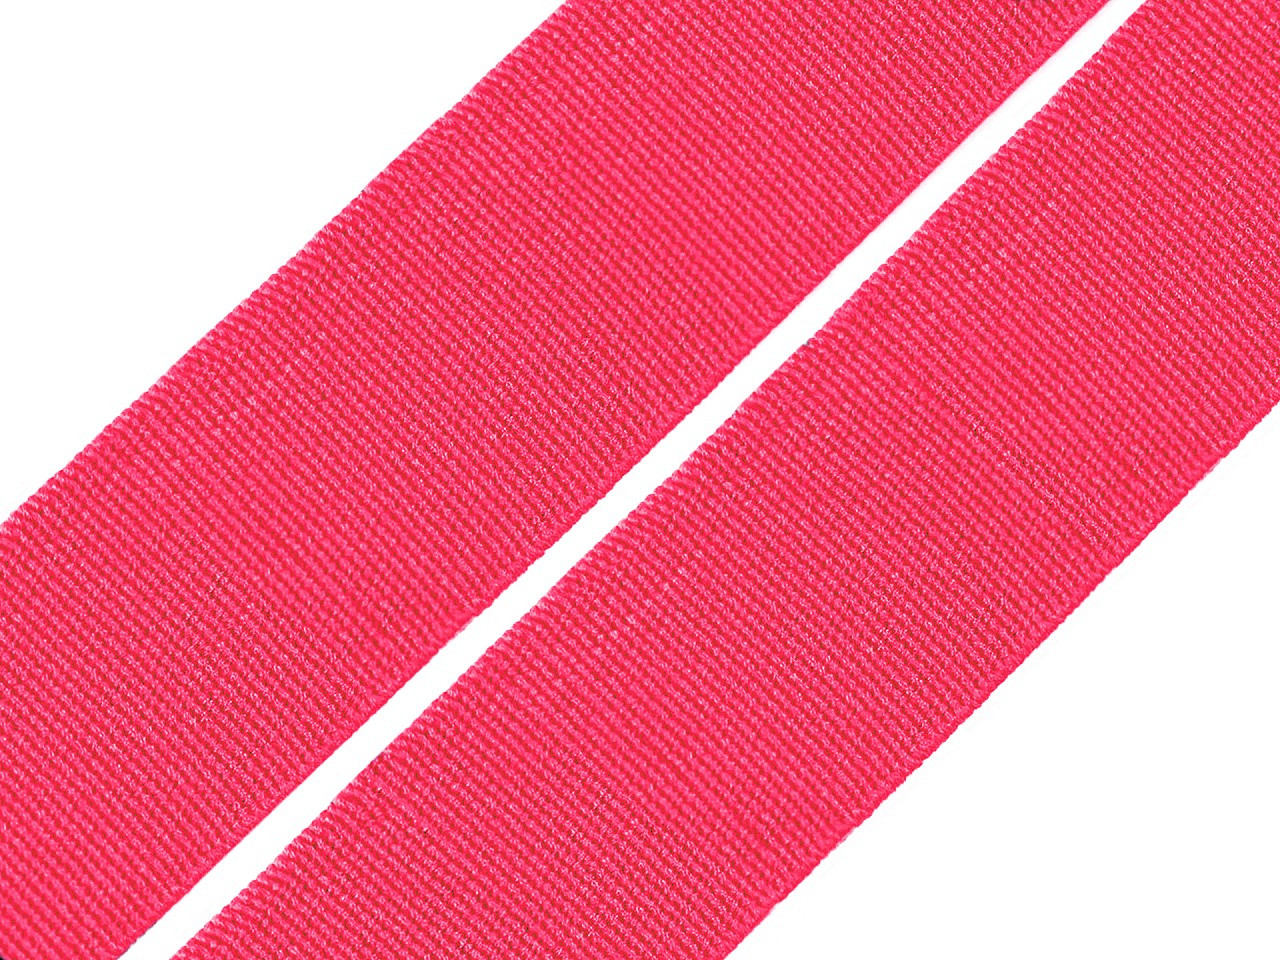 Pruženka hladká šíře 20 mm tkaná barevná, barva 1410 růžová neon